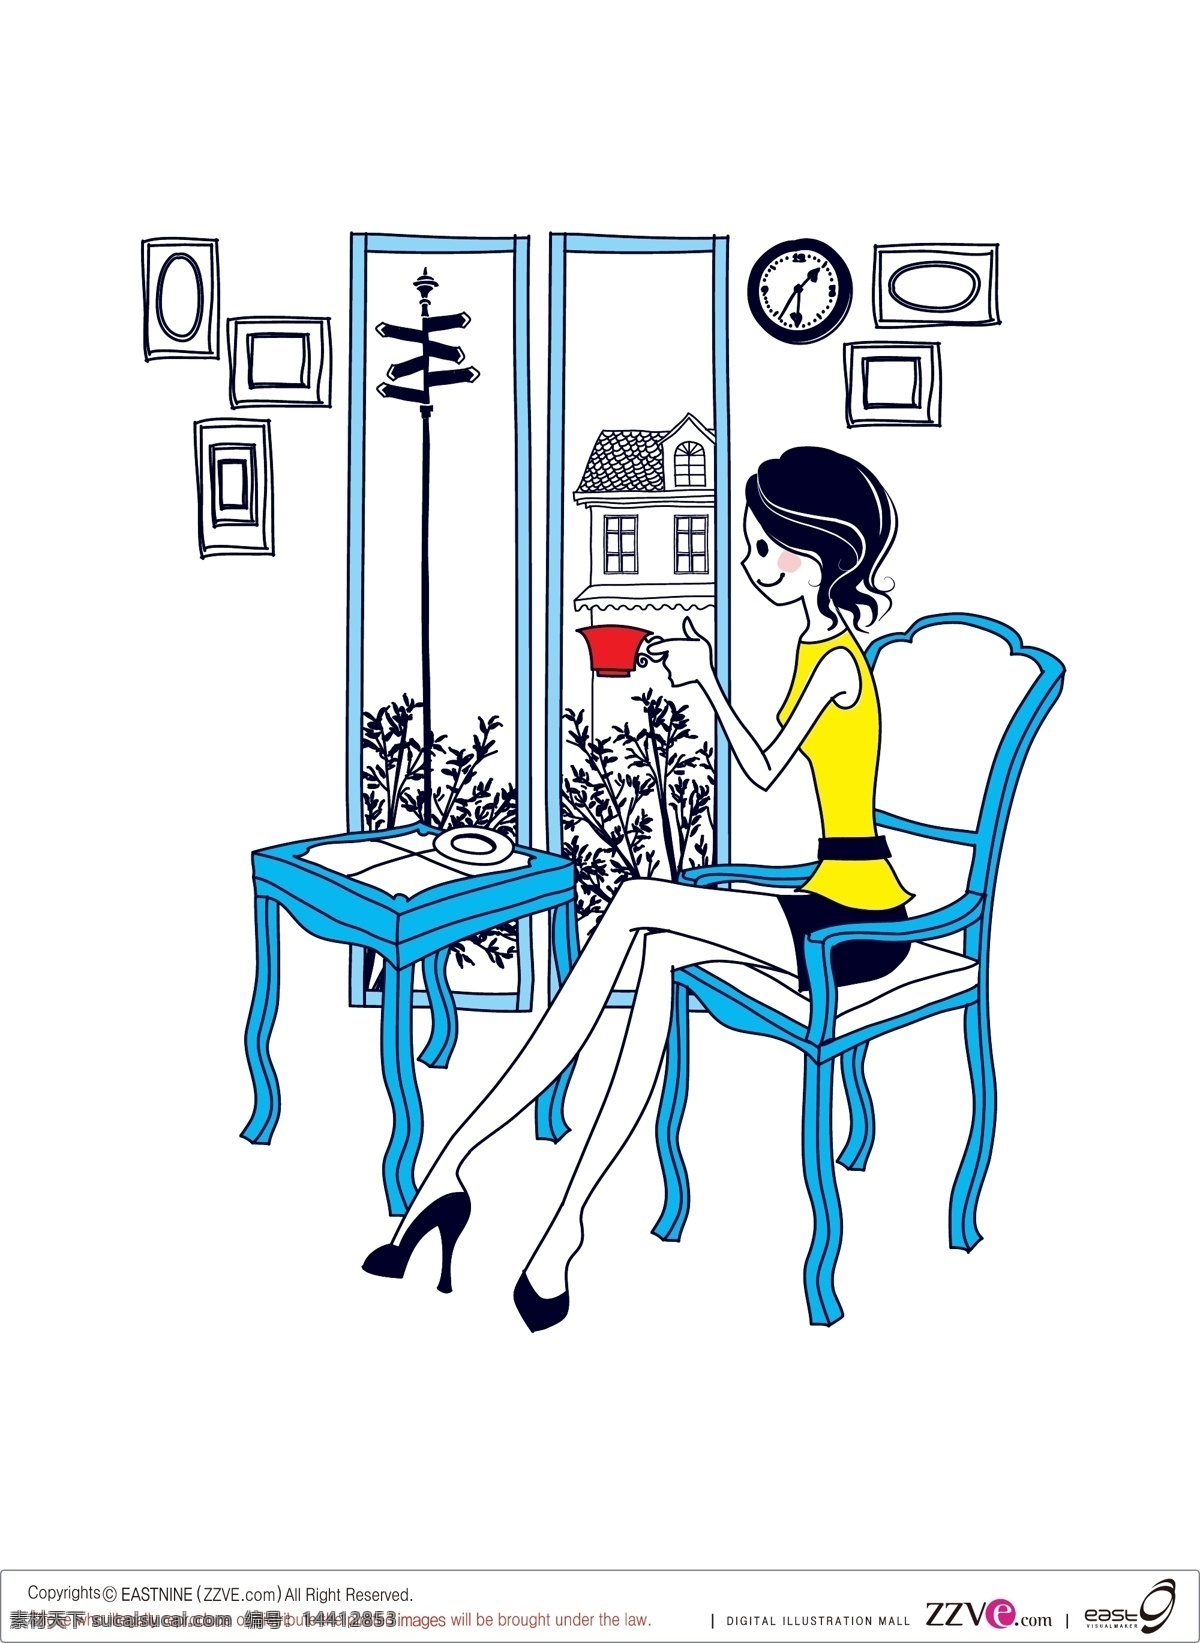 简单 绘画 女性 eps格式 杯子 窗 房子 挂画 挂钟 户外景色 可爱 矢量 线描 桌子 椅子 室内 植物 矢量图 矢量人物